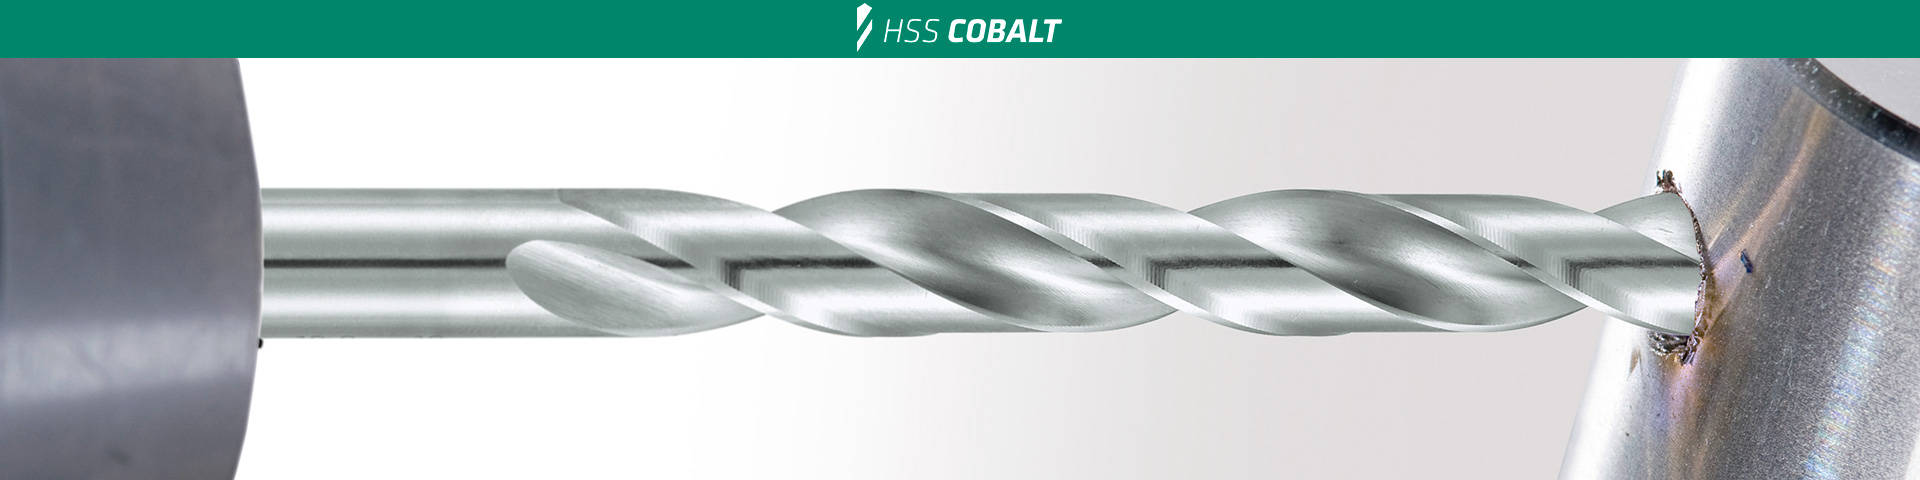 DIN 338 forte kurz Durchmesser 3 mm 18300300100 L2 33 mm L1 61 mm alpen Spiralbohrer HSS Cobalt